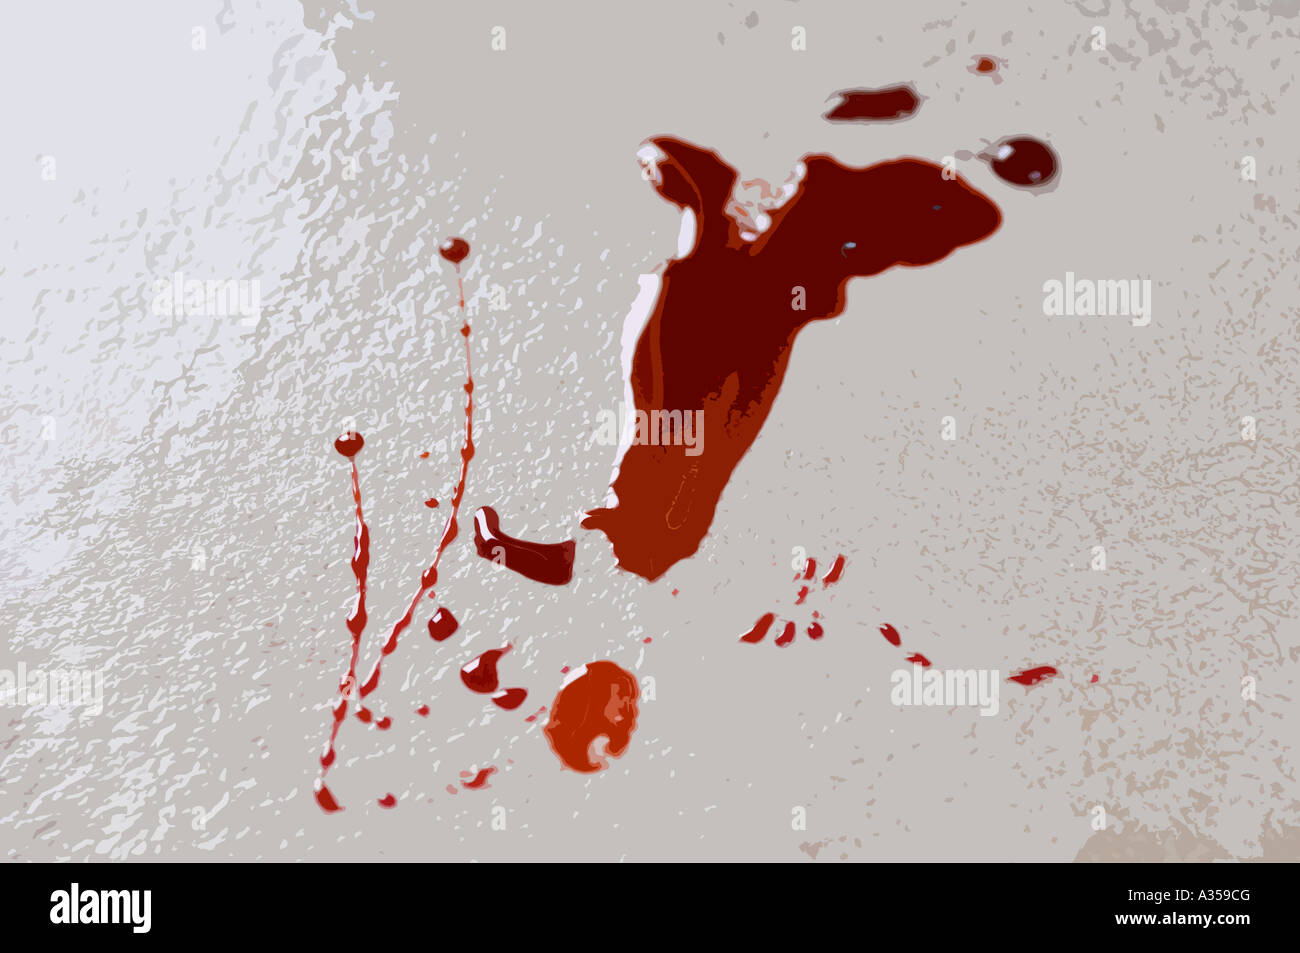 ein künstlerischen Eindruck von Blut Flecken auf einer Etage Stockfoto